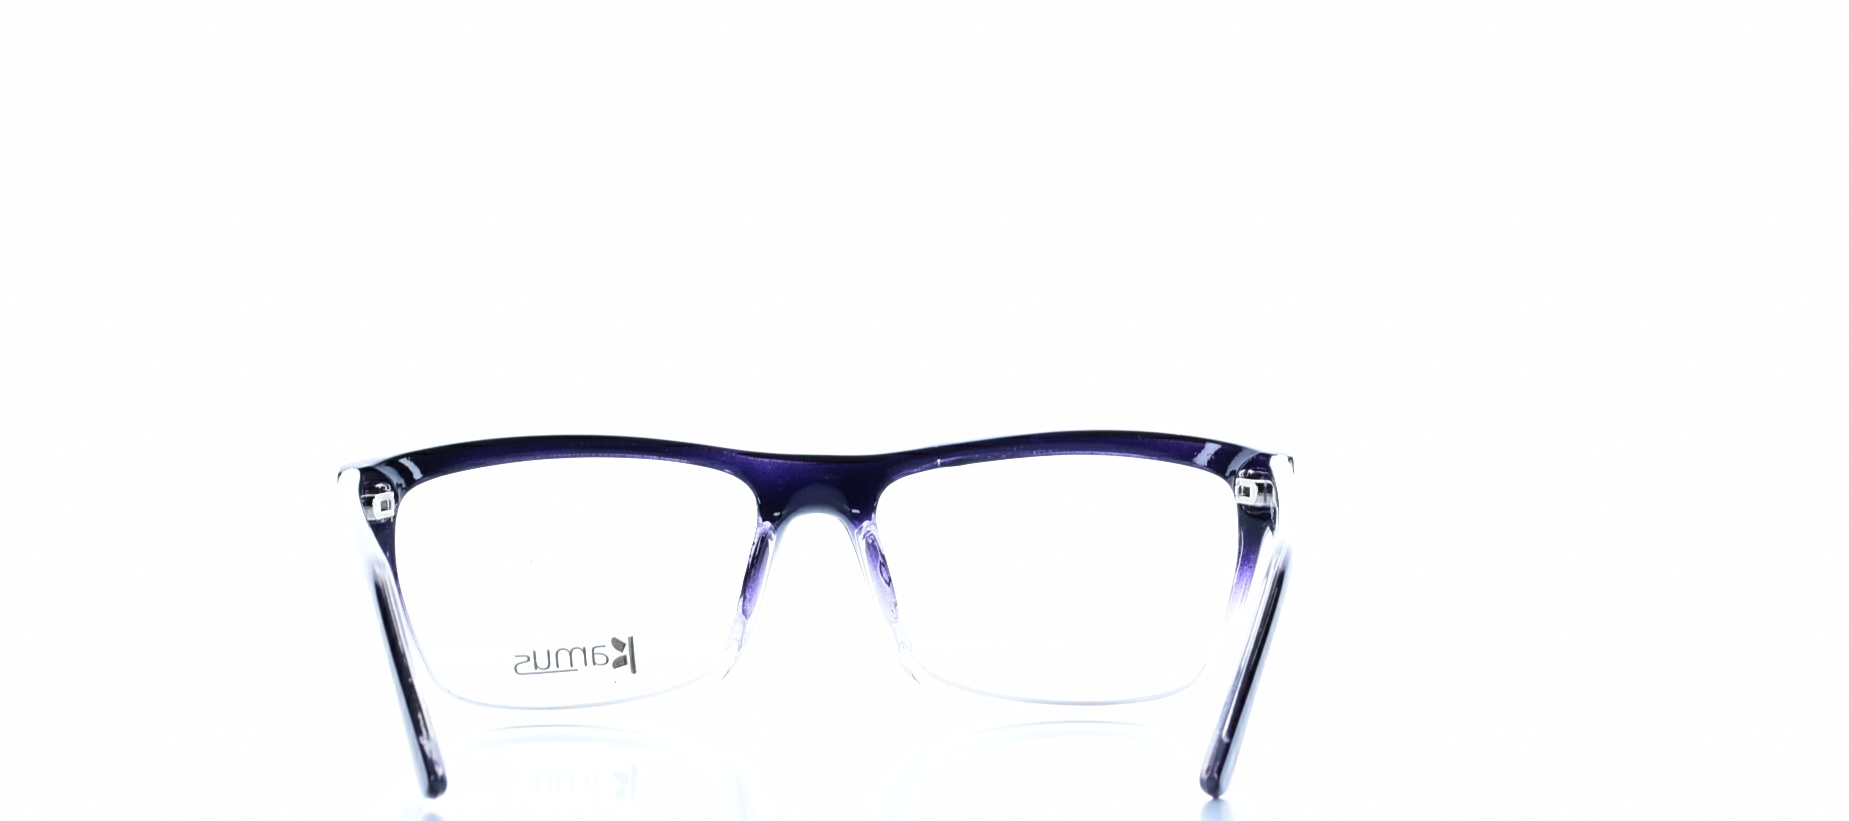 Rama ochelari vedere Kamus